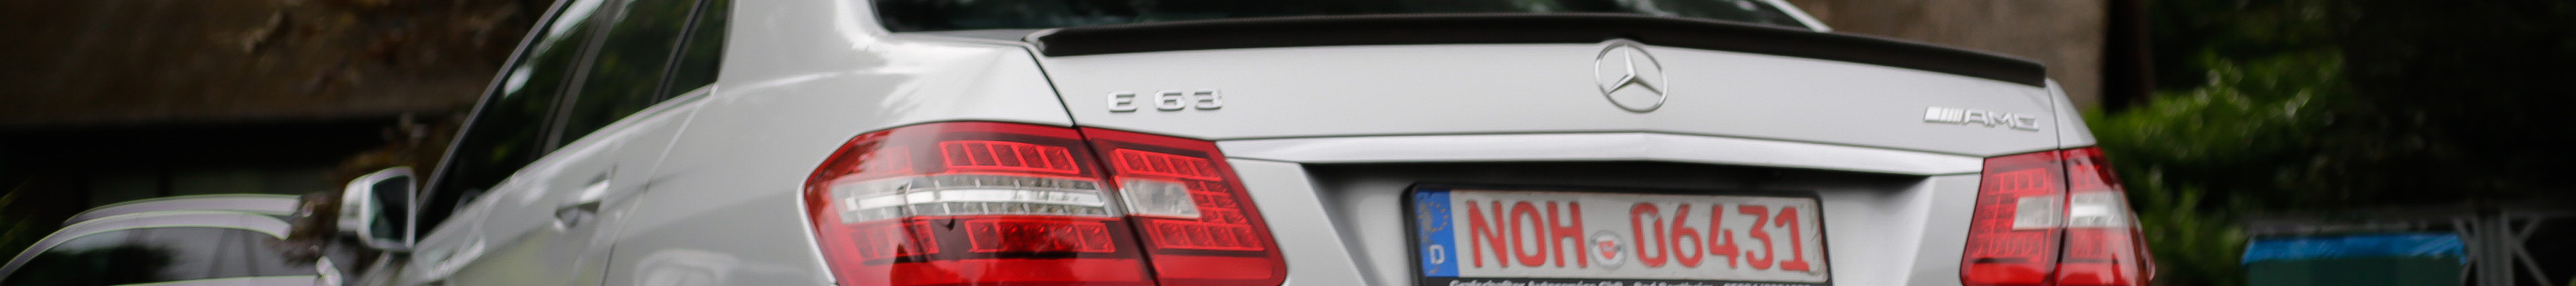 Mercedes-Benz E 63 AMG W212 V8 Biturbo